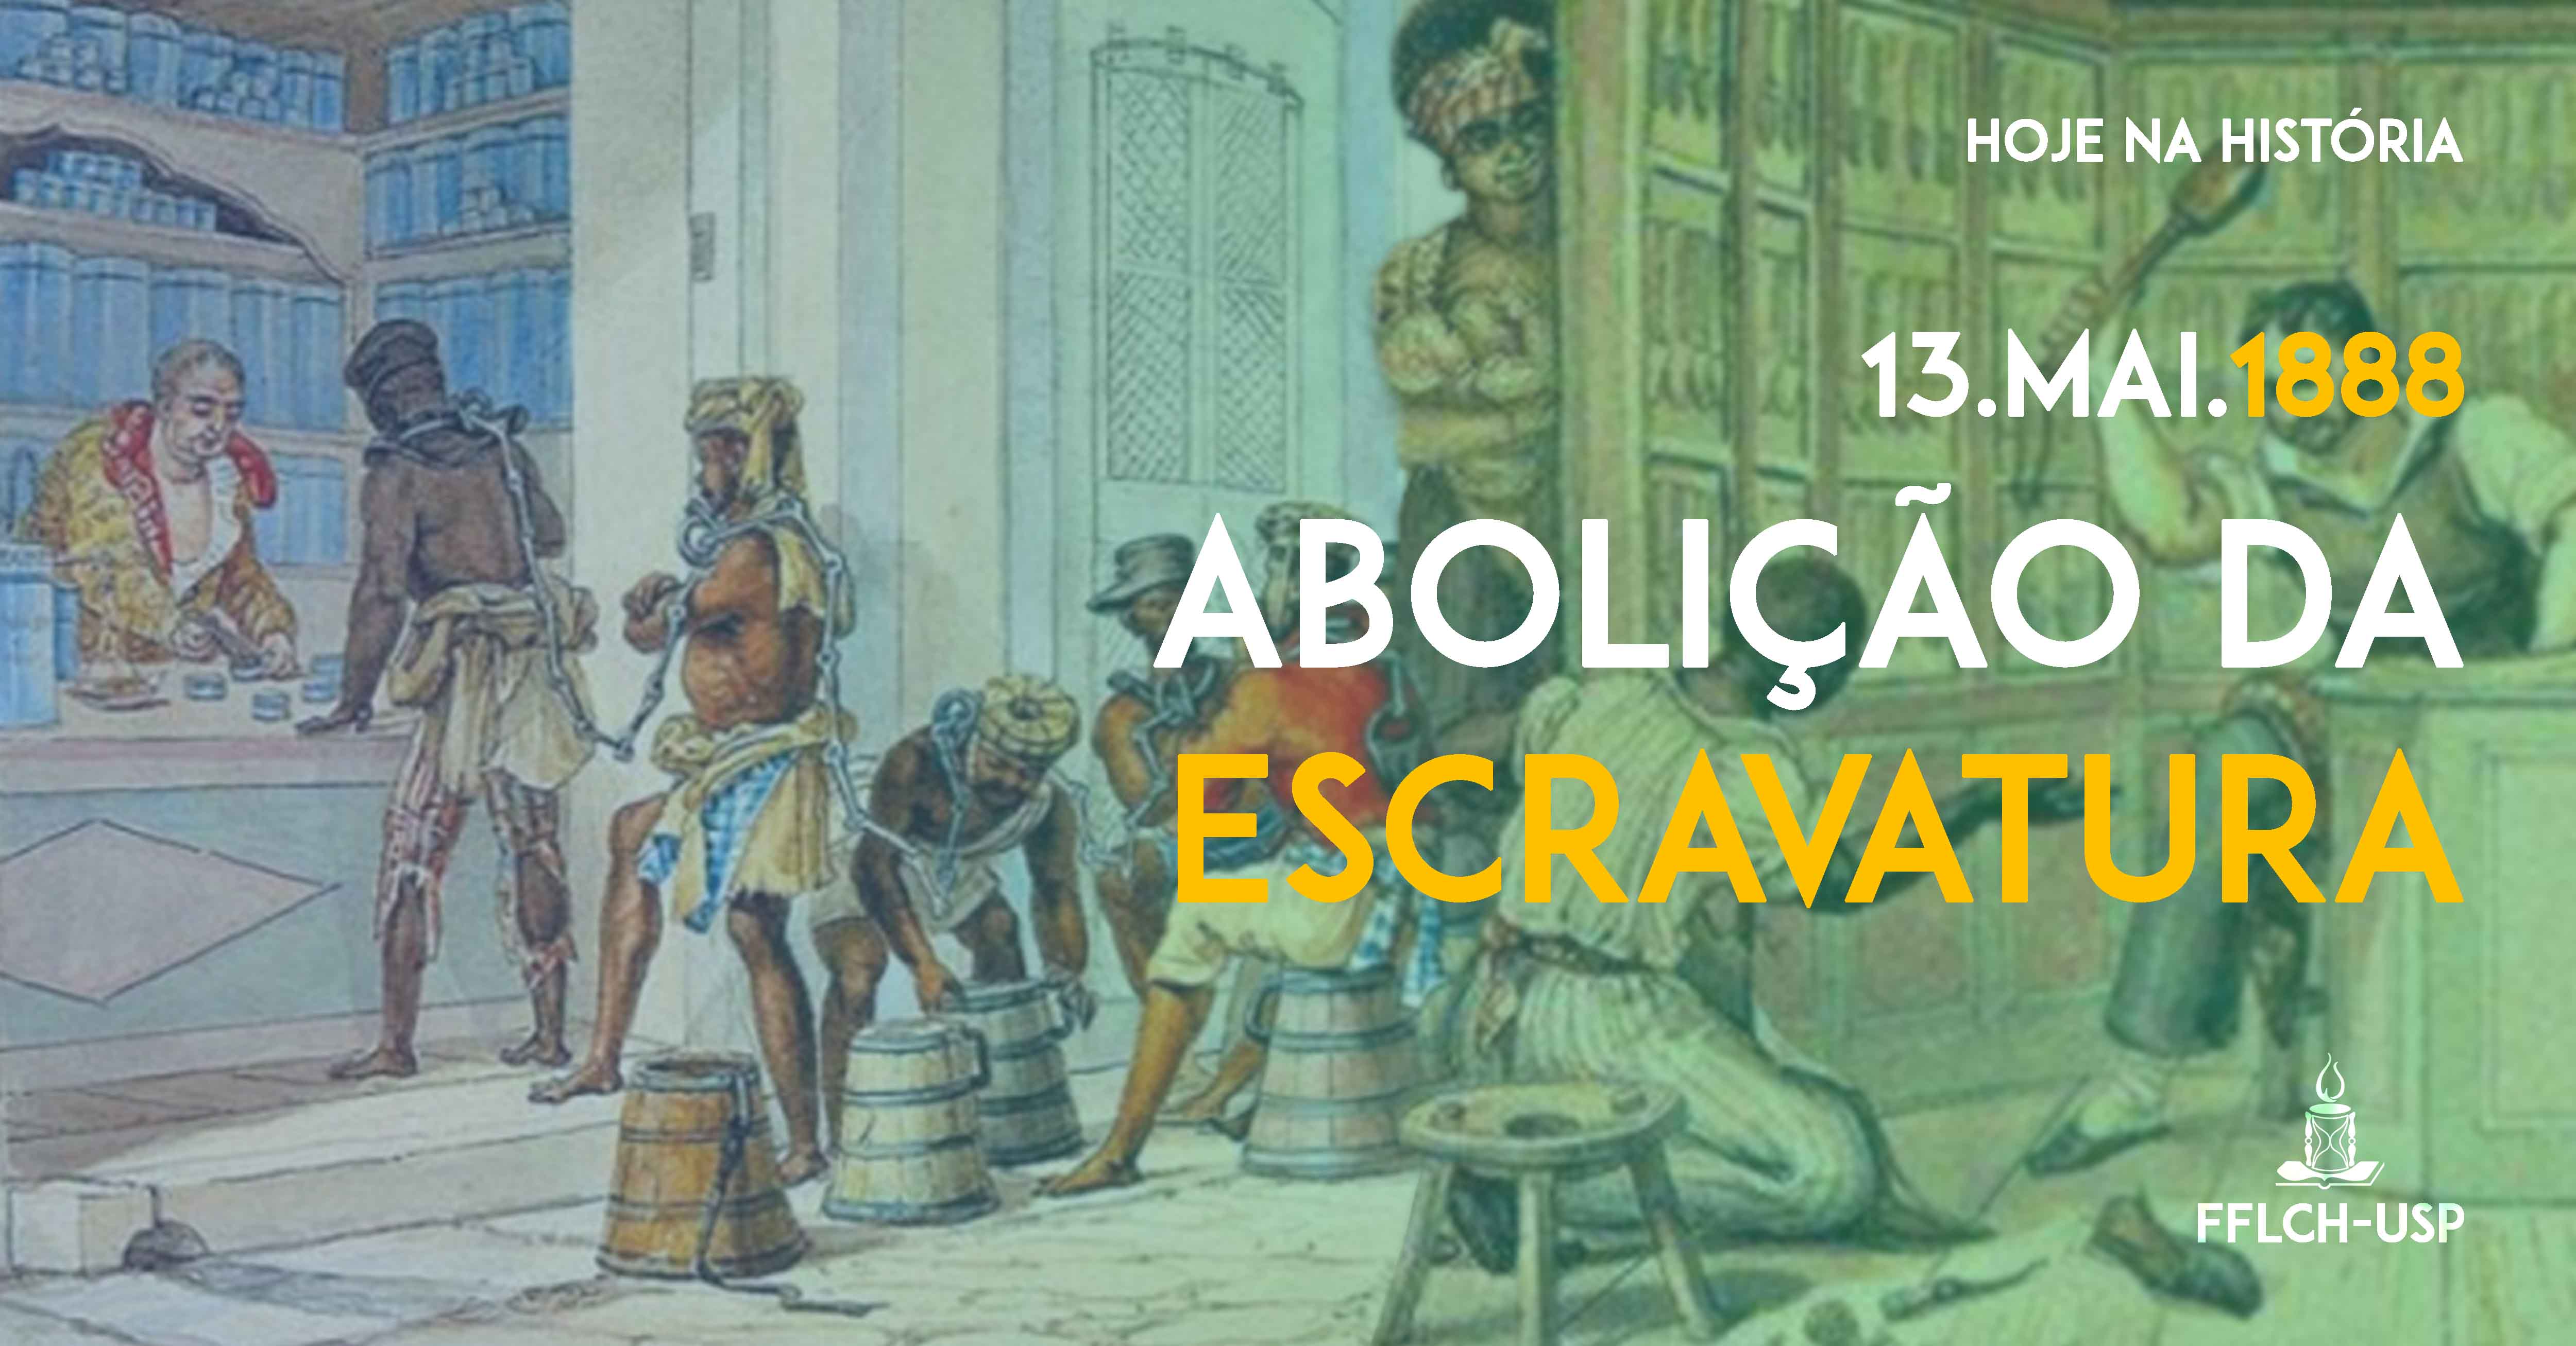 Abolição da escravidão no Brasil (Arte: Ricardo Freire)